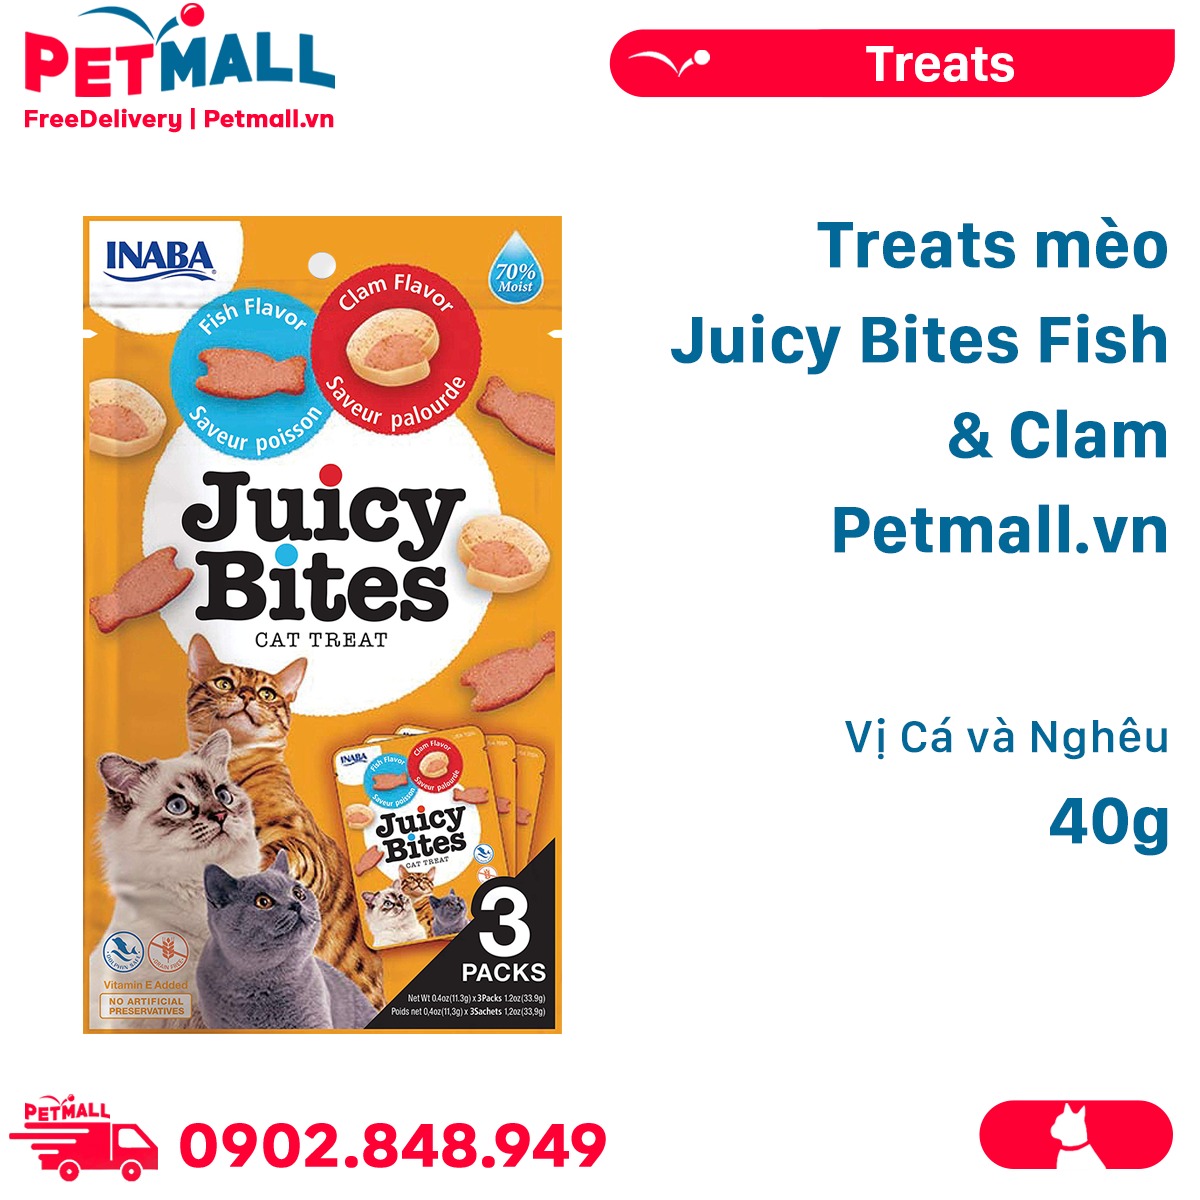 Treats mèo Juicy Bites Fish & Clam 40g - Vị Cá và Nghêu Petmall